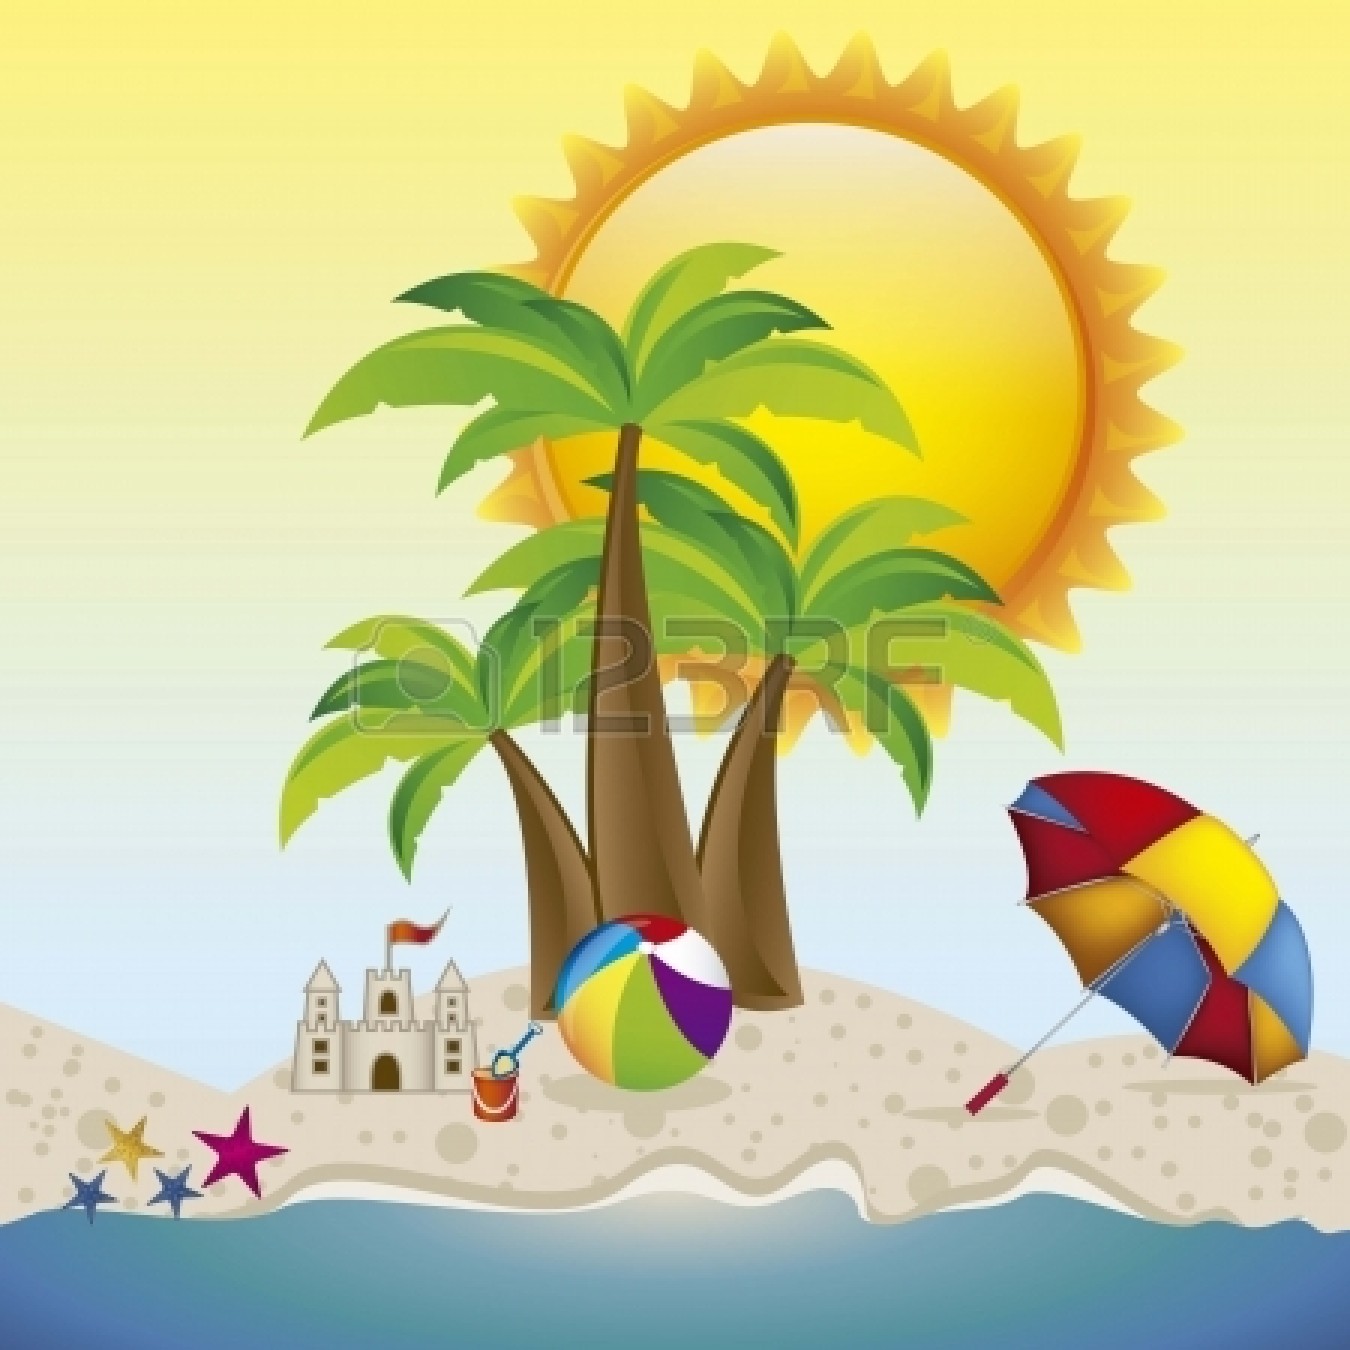 clipart-beach-summer-season-picture-2379087-clipart-beach-summer-season